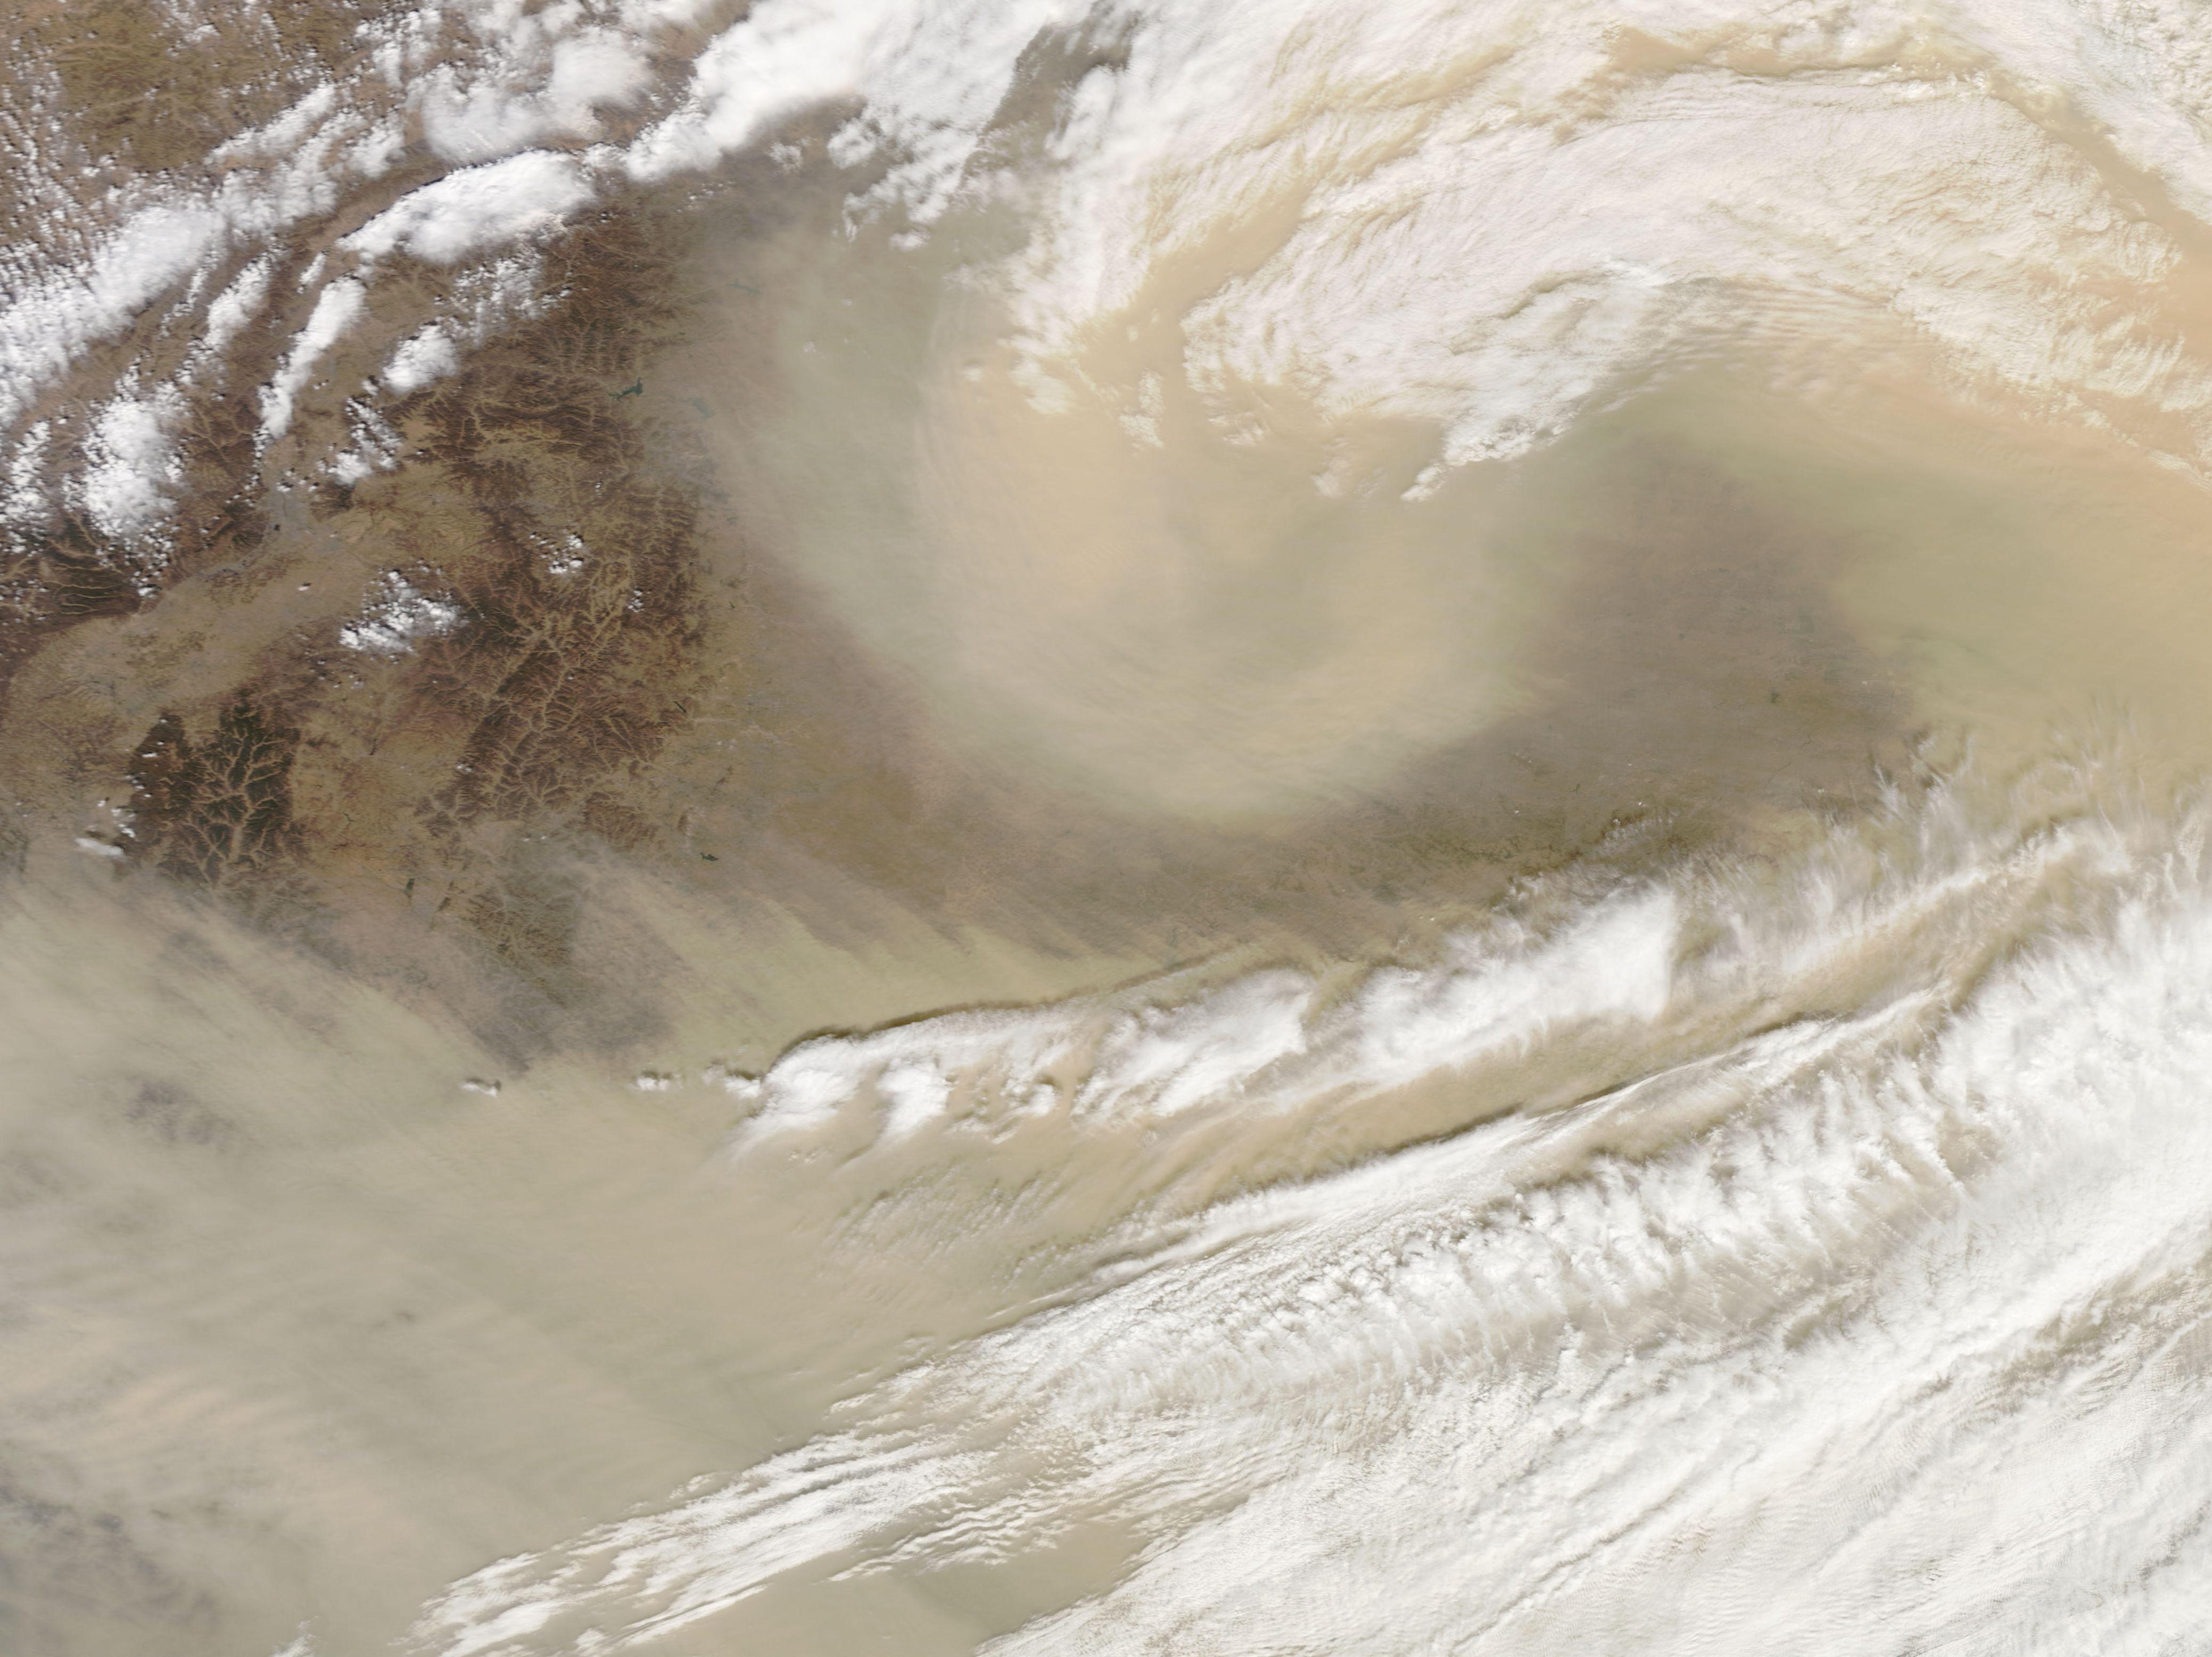 Spring Sandstorm Scours China